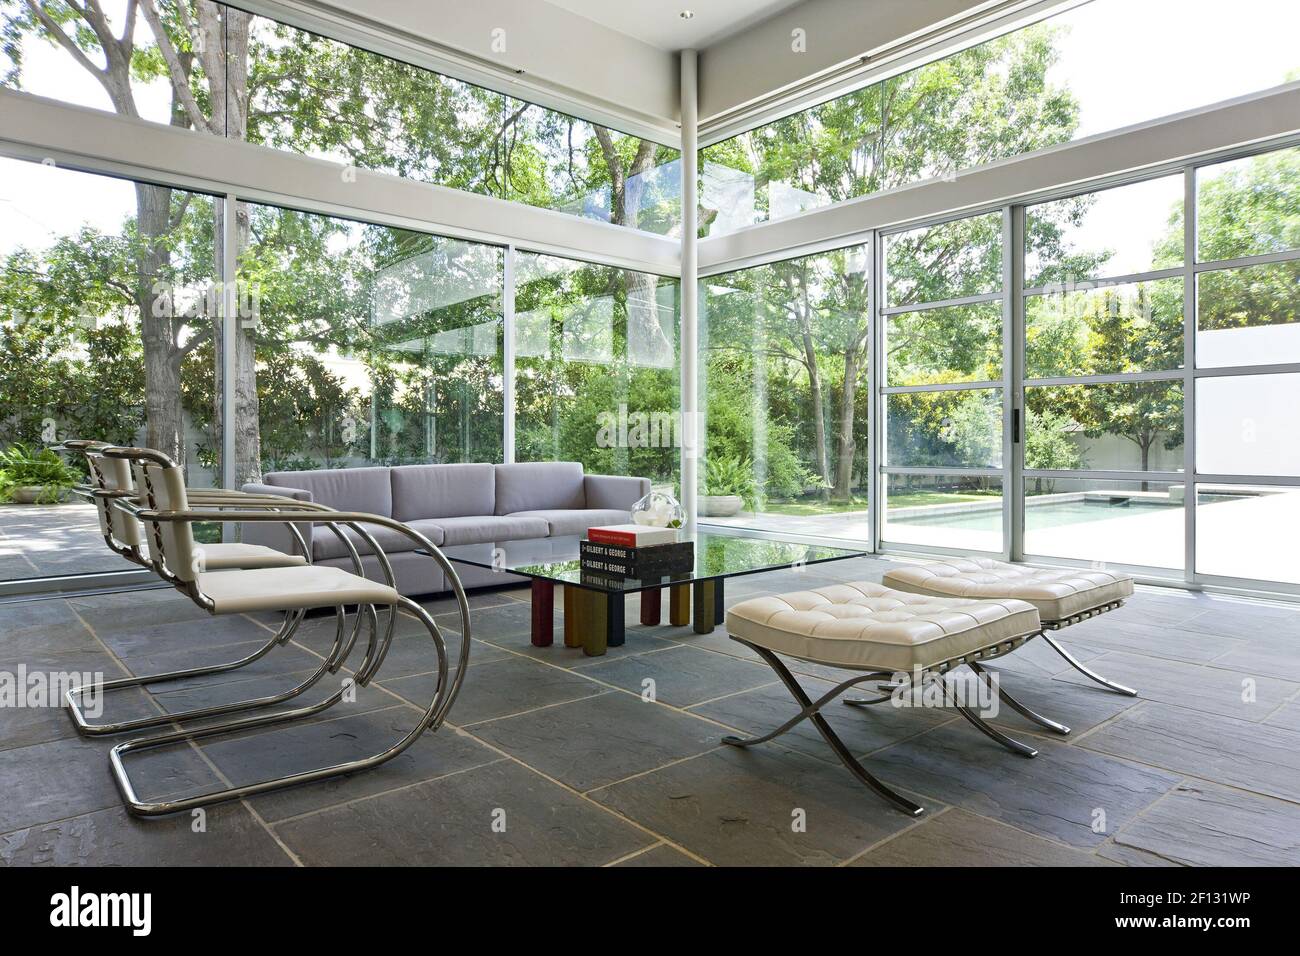 Le verre du sol au plafond fait entrer la lumière dans toute la maison  Schwartz, avec le mobilier minimaliste du salon (fauteuils et tabourets en  chrome et cuir Mies van der Rohe,